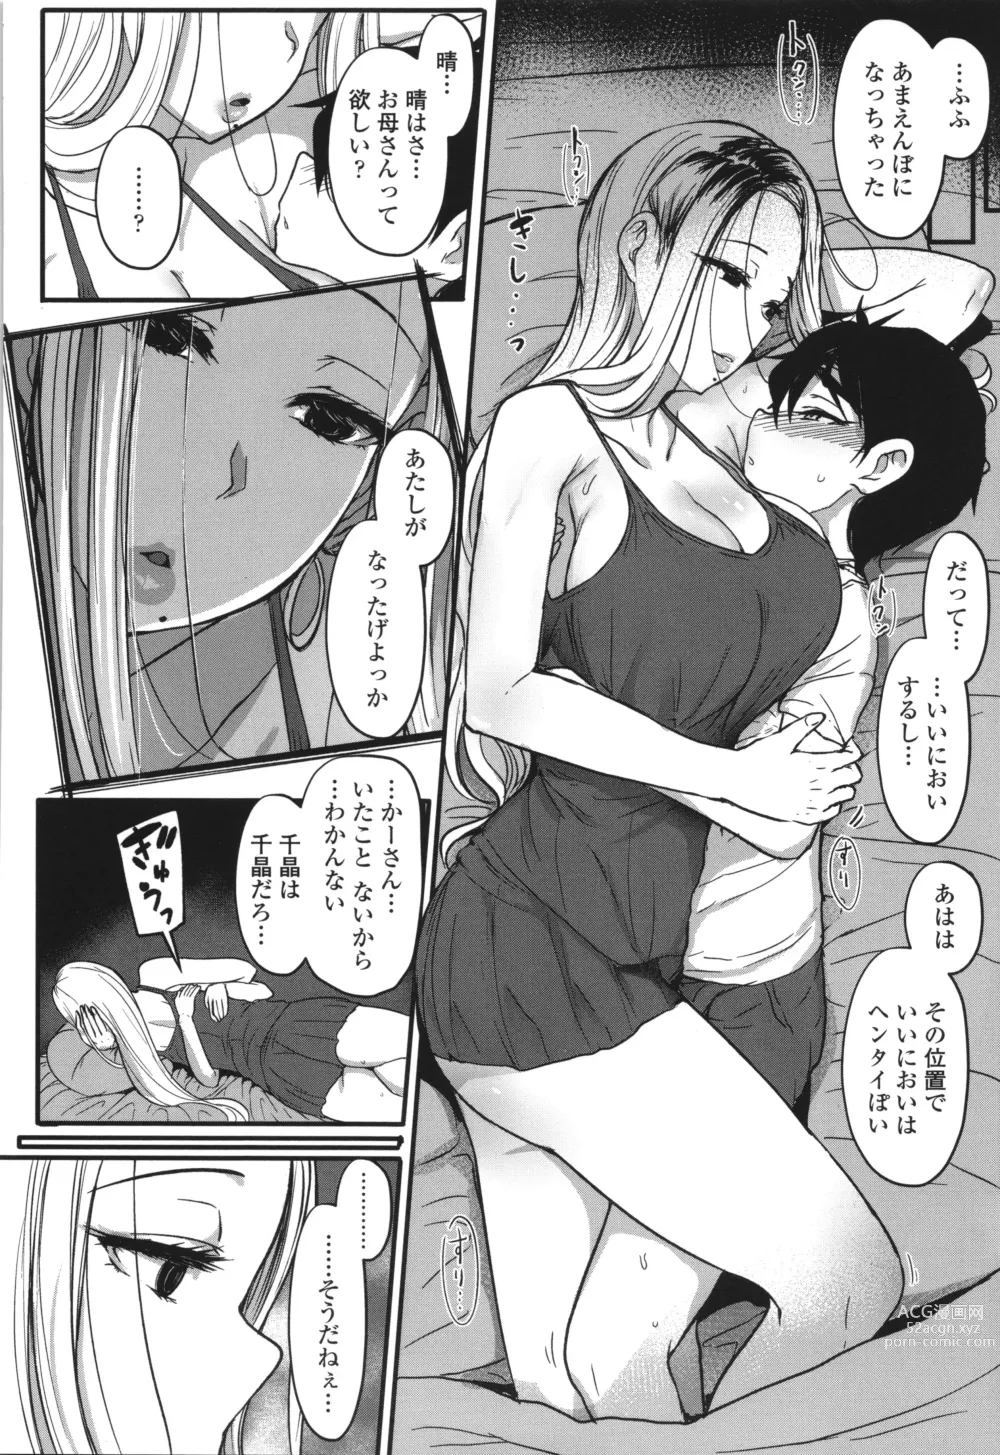 Page 281 of manga Iikedo, Naysyone.